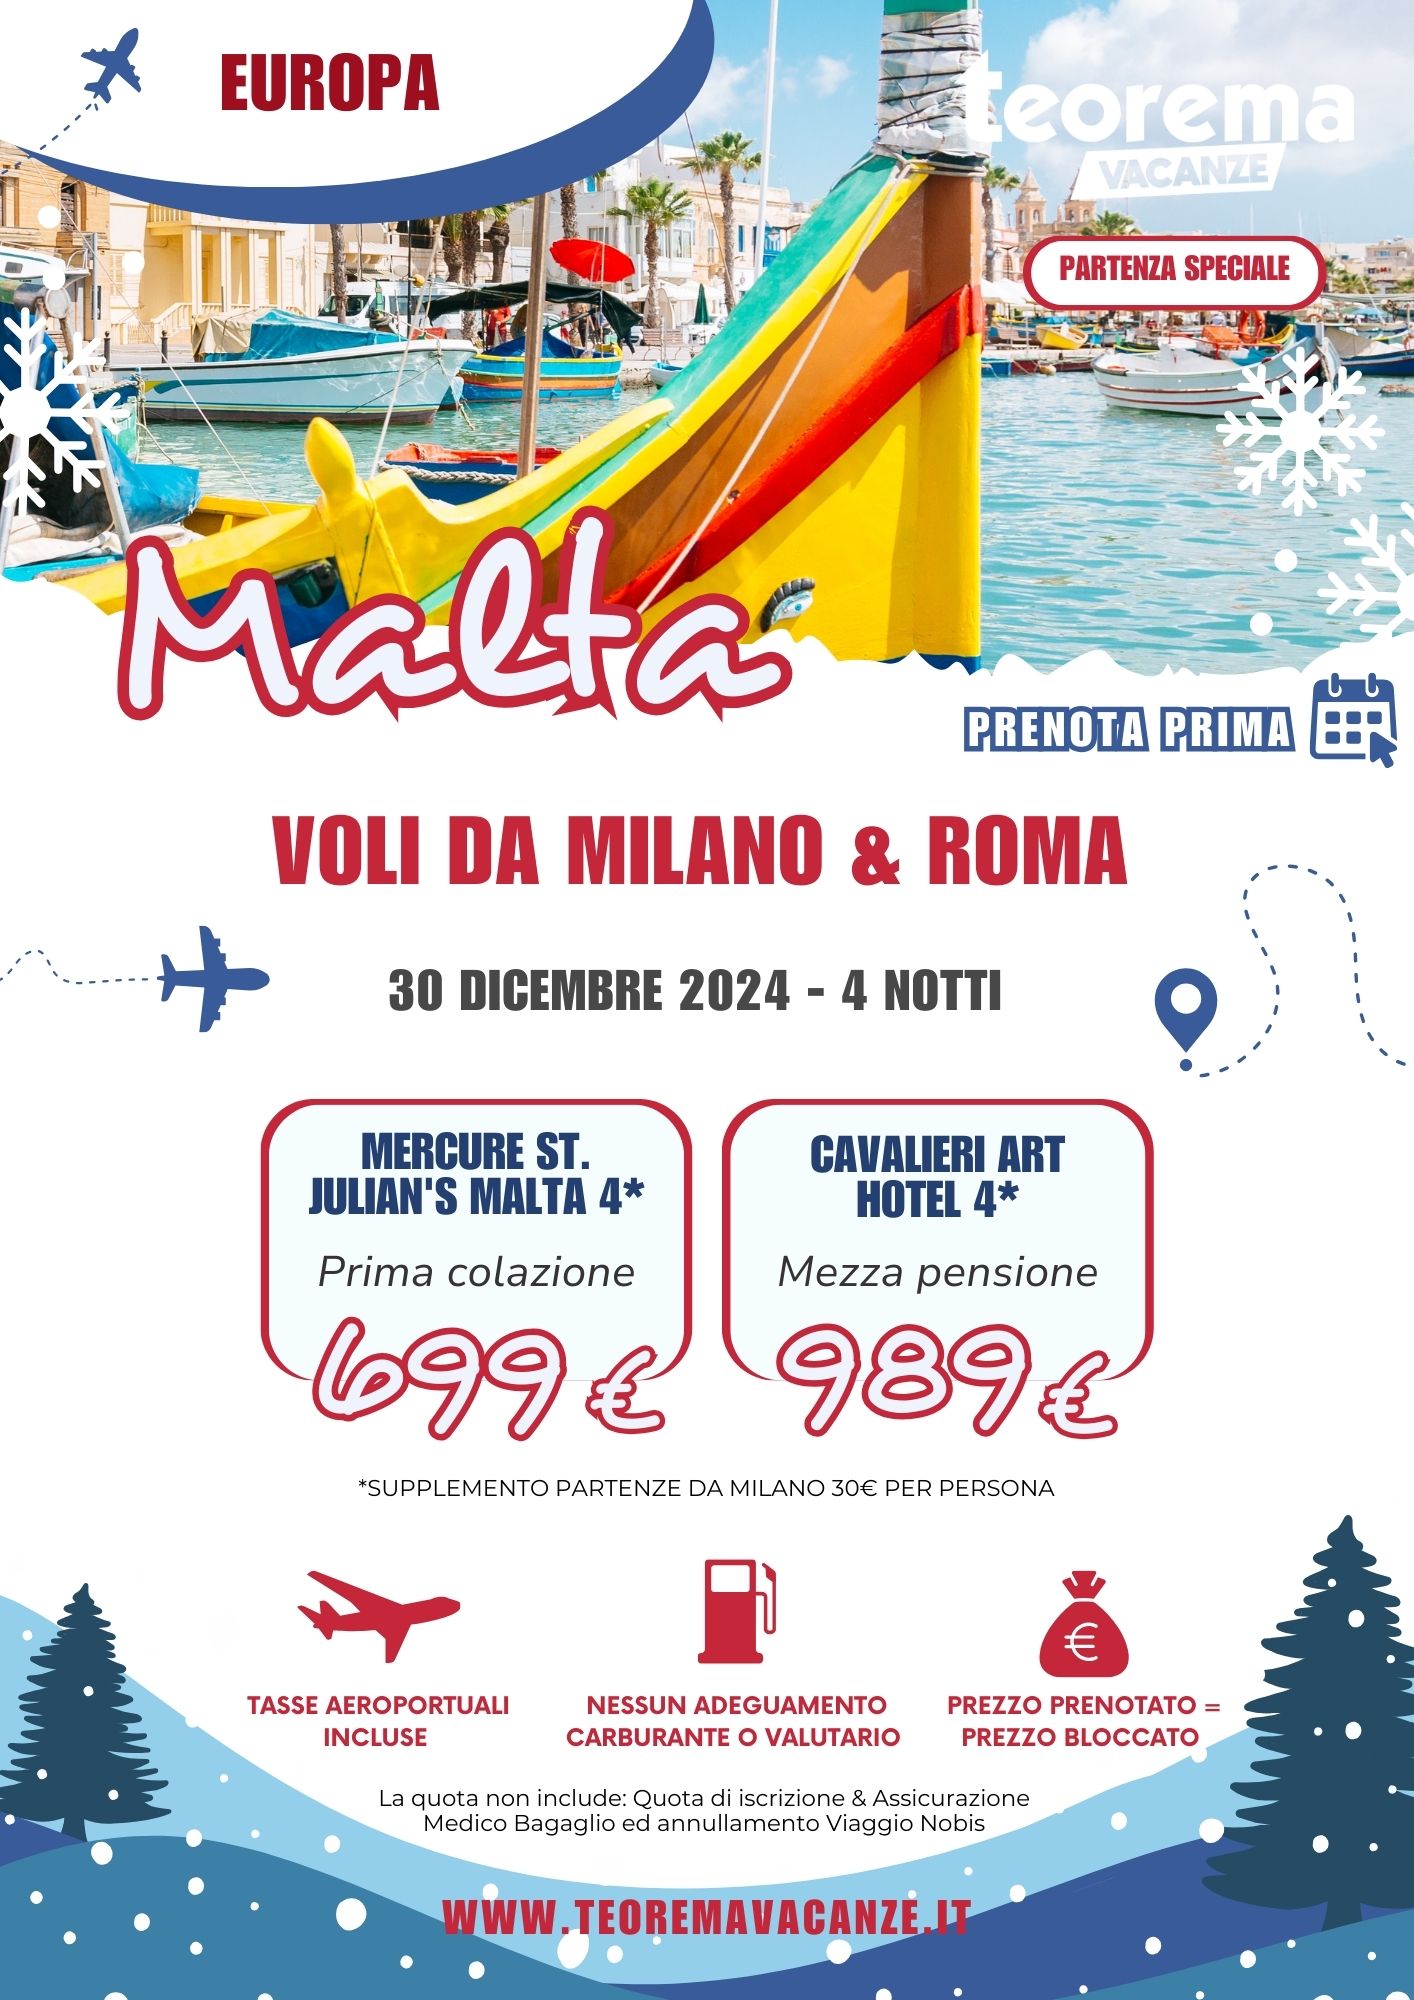 TEOREMA WINTER 2025 - MALTA DA MILANO & ROMA